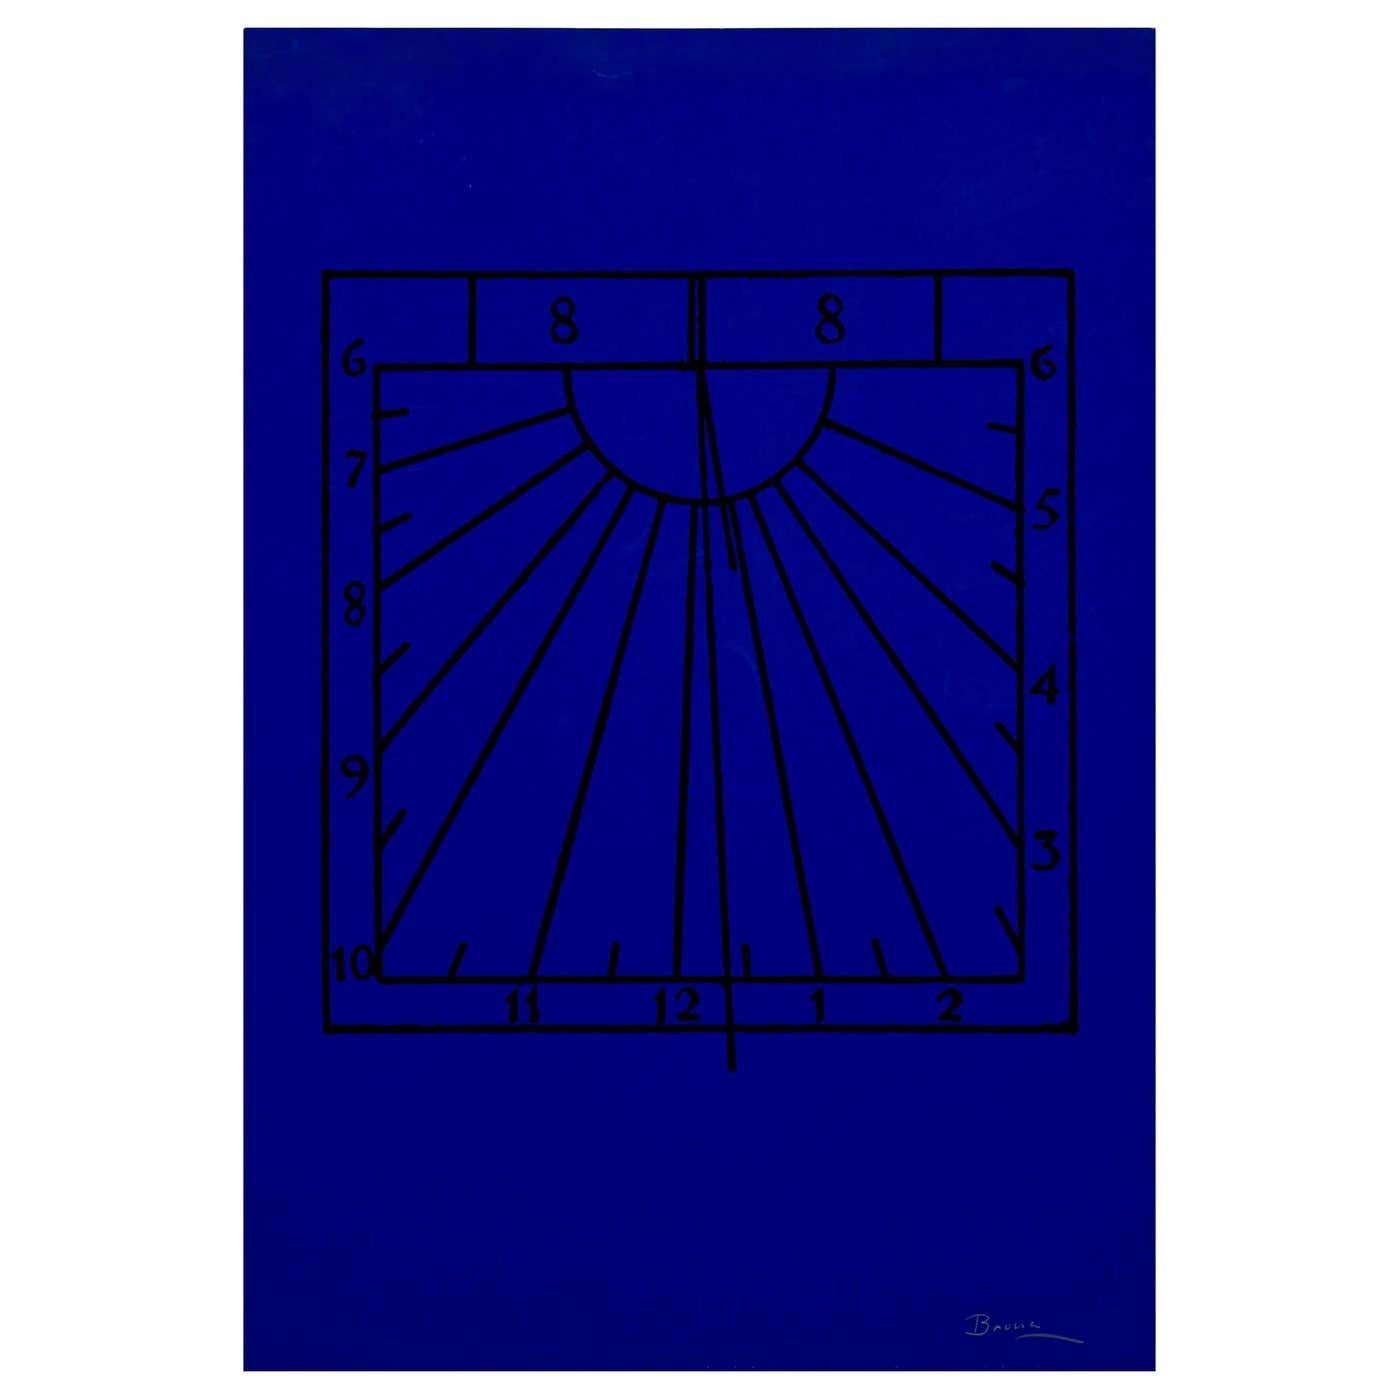 Visuelles Gedicht von Joan Brossa, ca. 1989.

Grafischer Druck. Lithographie auf Guarro-Papier. Limitierte Auflage (50). Signiert und nummeriert. 

Maße: Breite 38 cm (15 in)
Höhe 50 cm (20 in)

Joan Brossa - Barcelona, Spanien 1919-1998

Er war ein